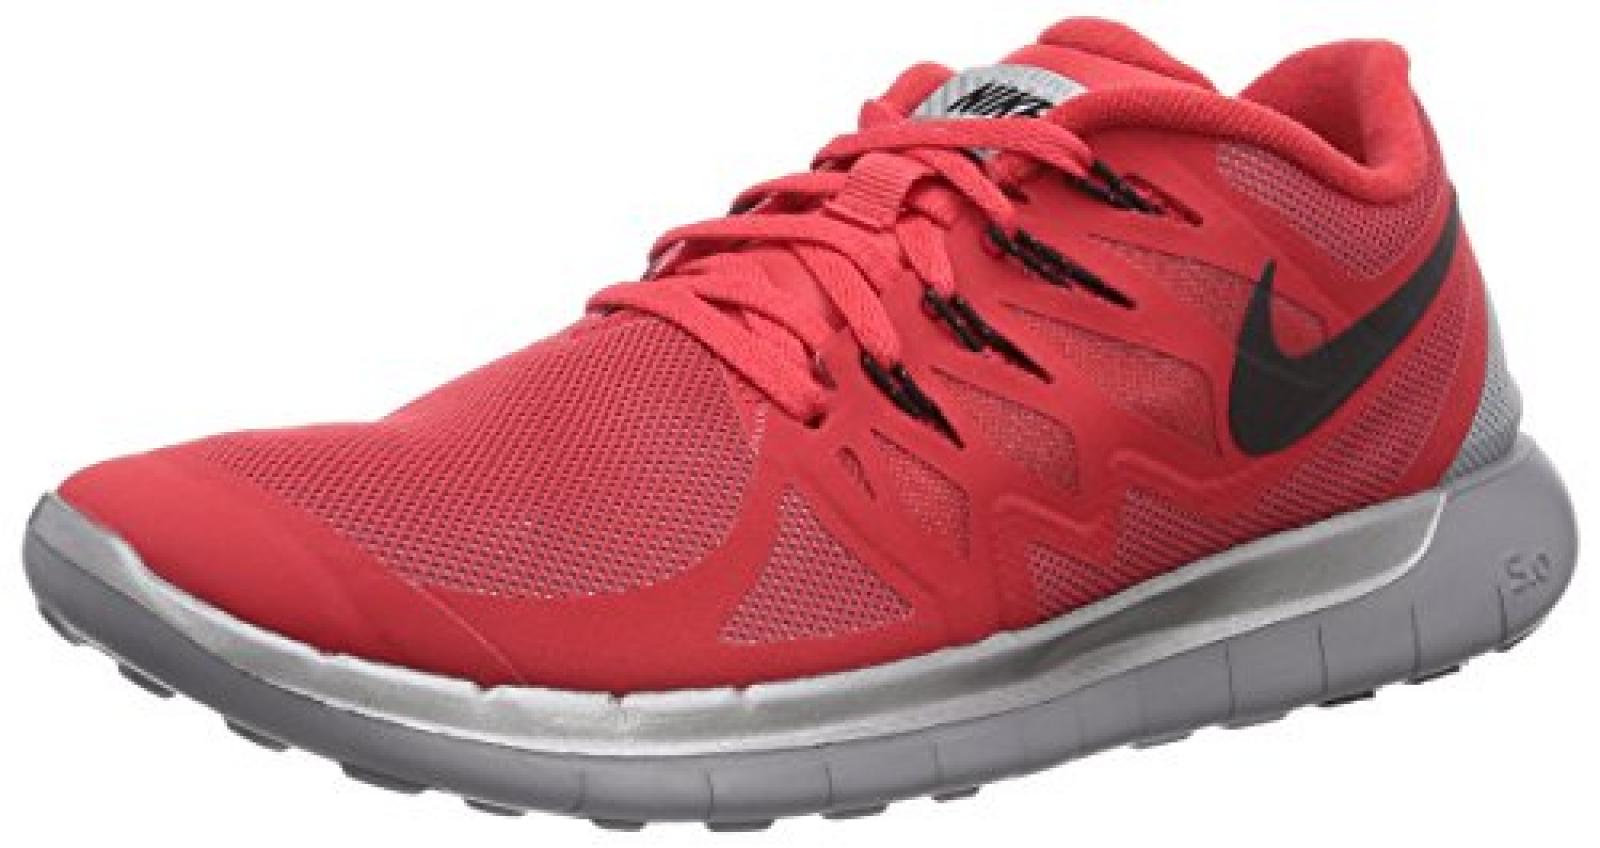 Nike Free 5.0 Flash 685168 Unisex-Erwachsene Laufschuhe Training 